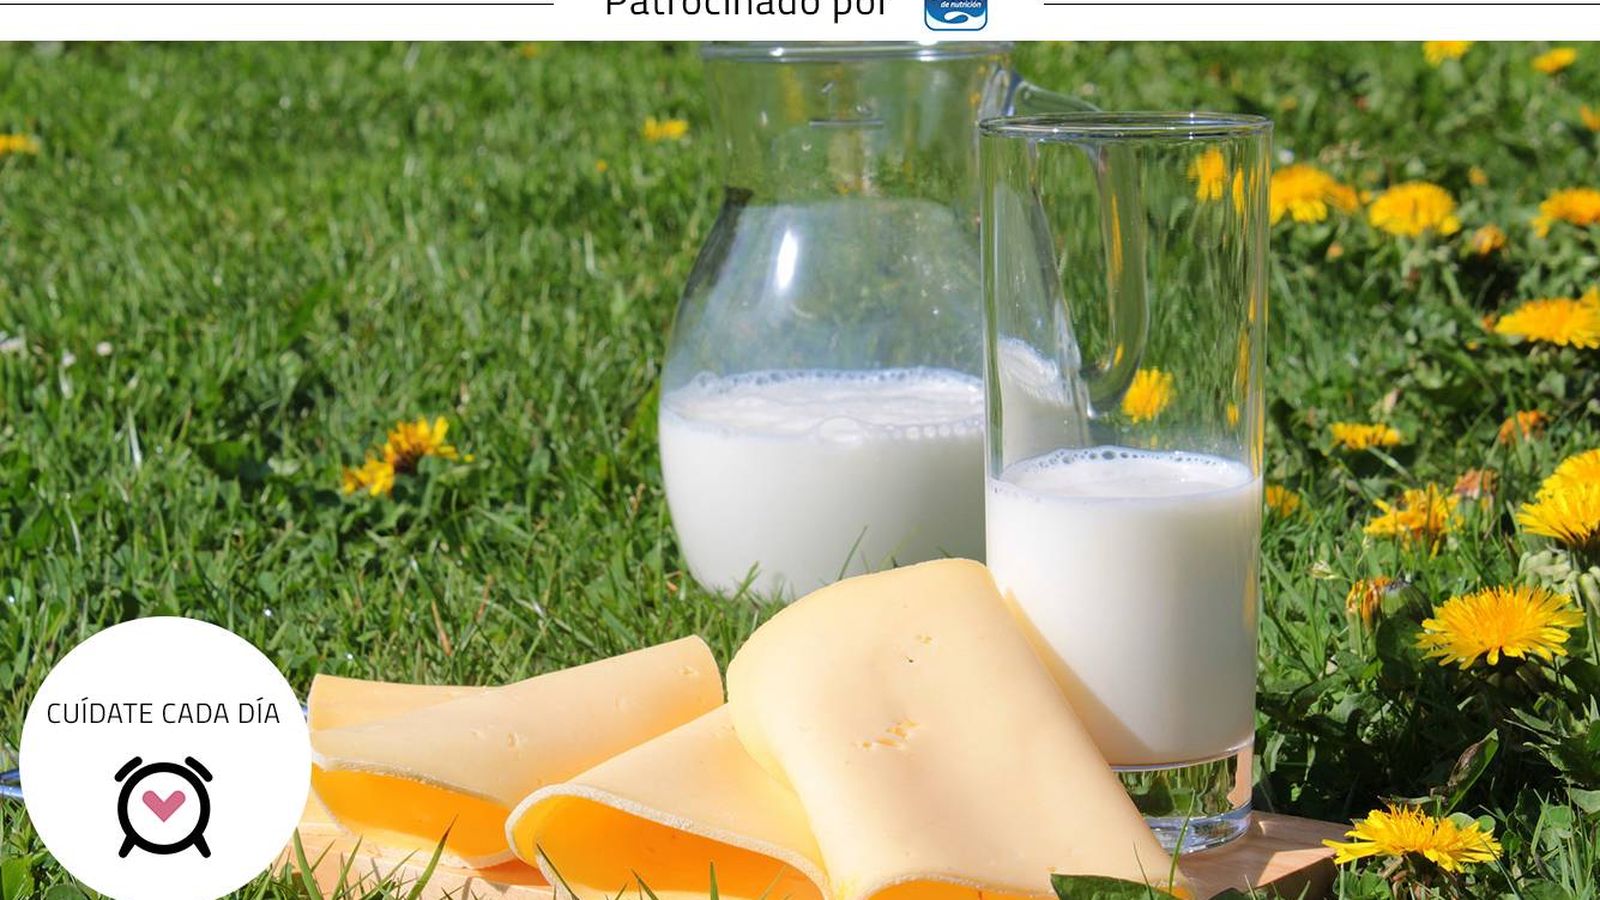 Foto: Aumentar el consumo de leche rica en calcio ayuda a que tus niveles del mineral sean óptimos